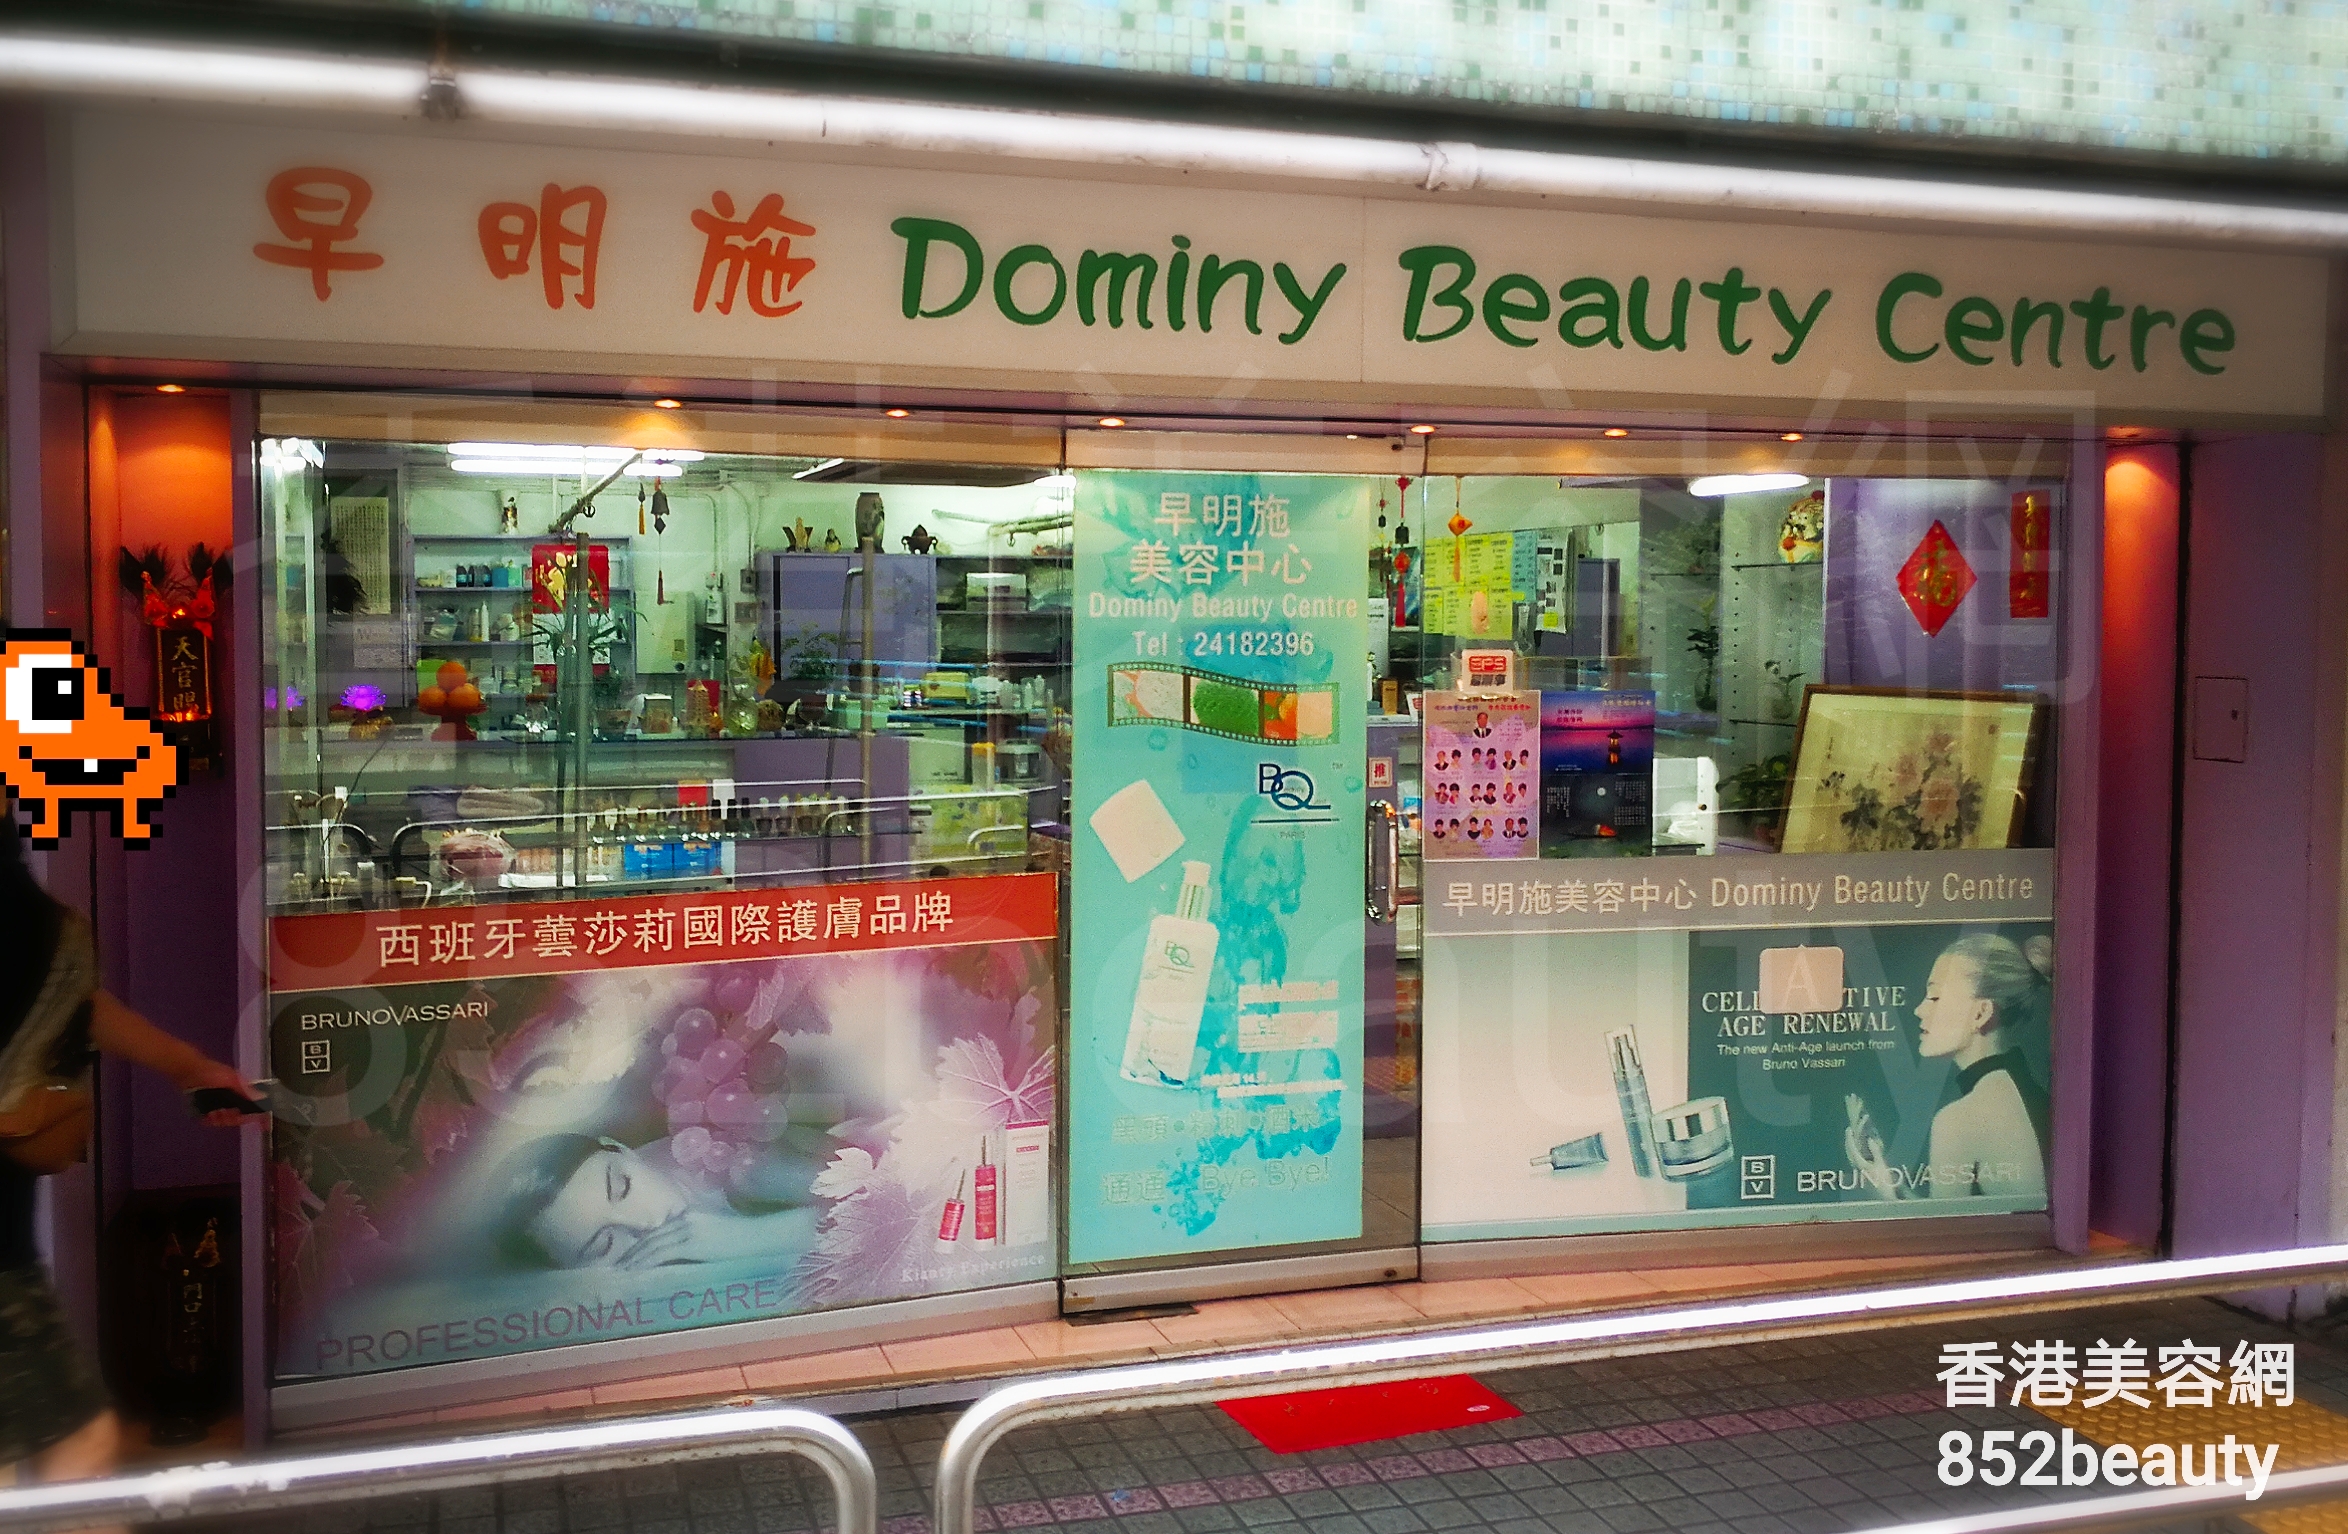 面部護理: 早明施美容中心 Dominy Beauty Centre